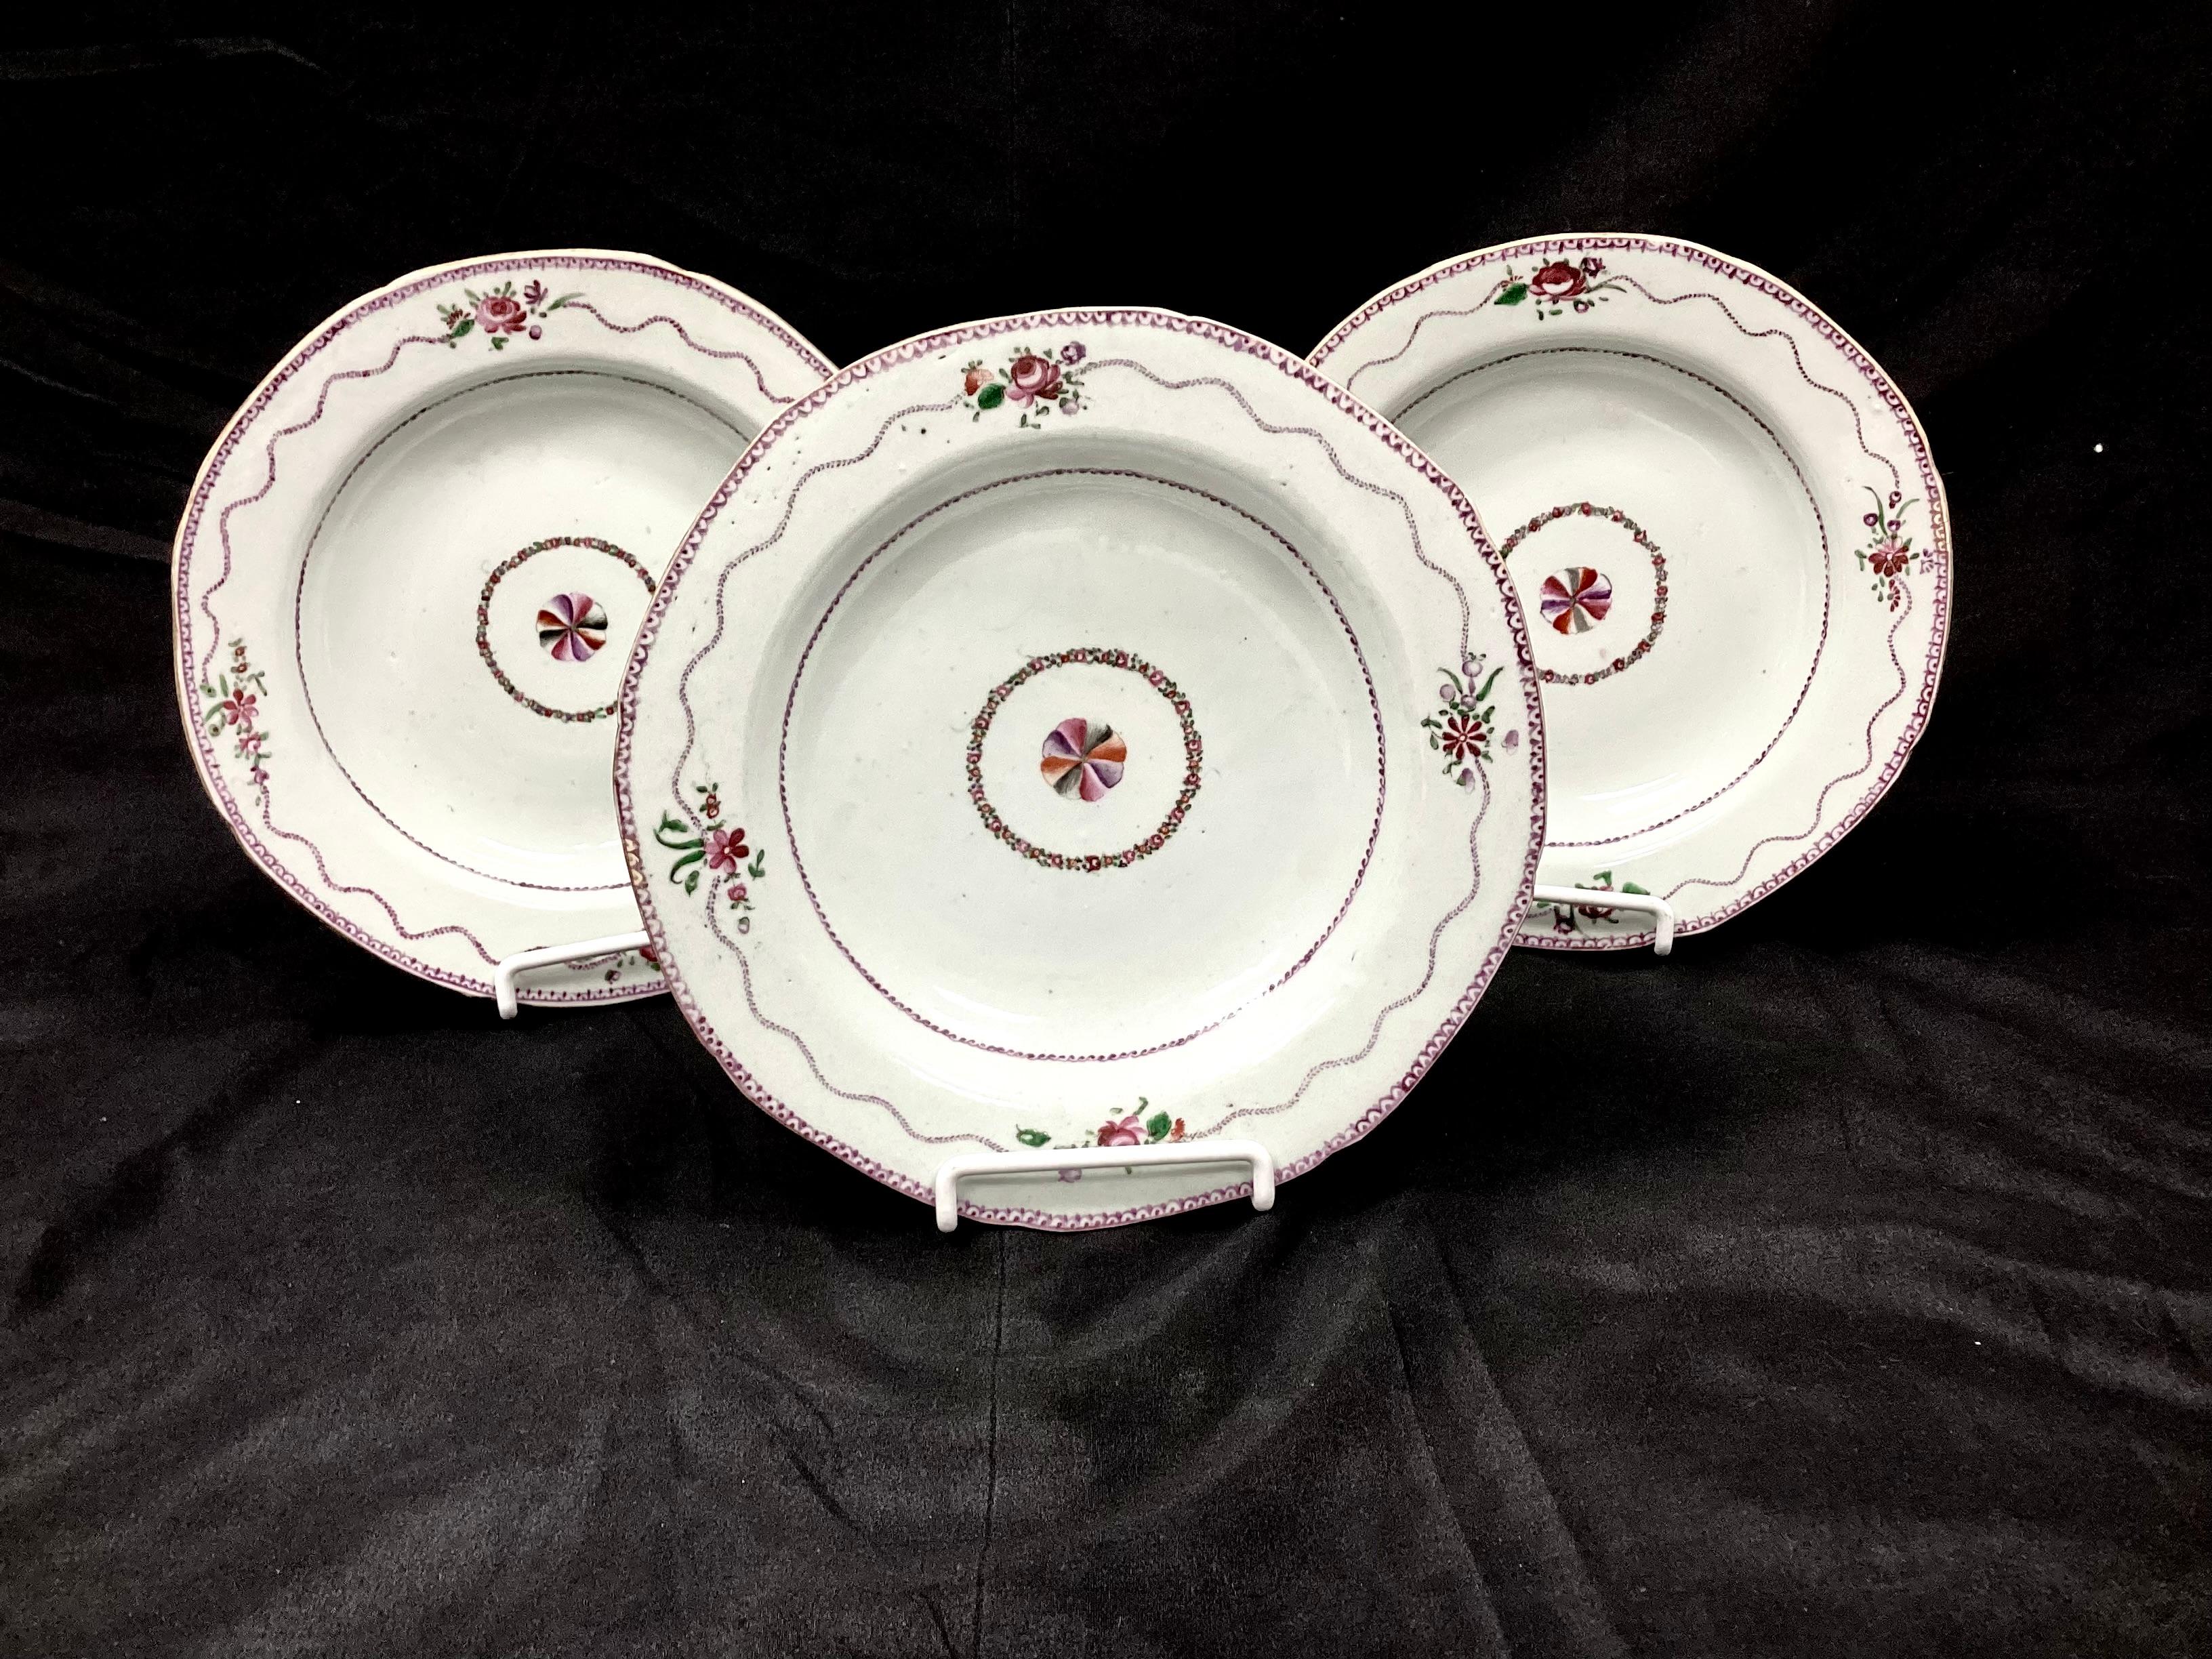 Ensemble de six bols en porcelaine d'exportation chinoise du XIXe siècle. Les bols sont peints à la main avec des motifs floraux, la fleur centrale étant entourée d'une guirlande. Whiting : couleurs violet, vert et blanc. 